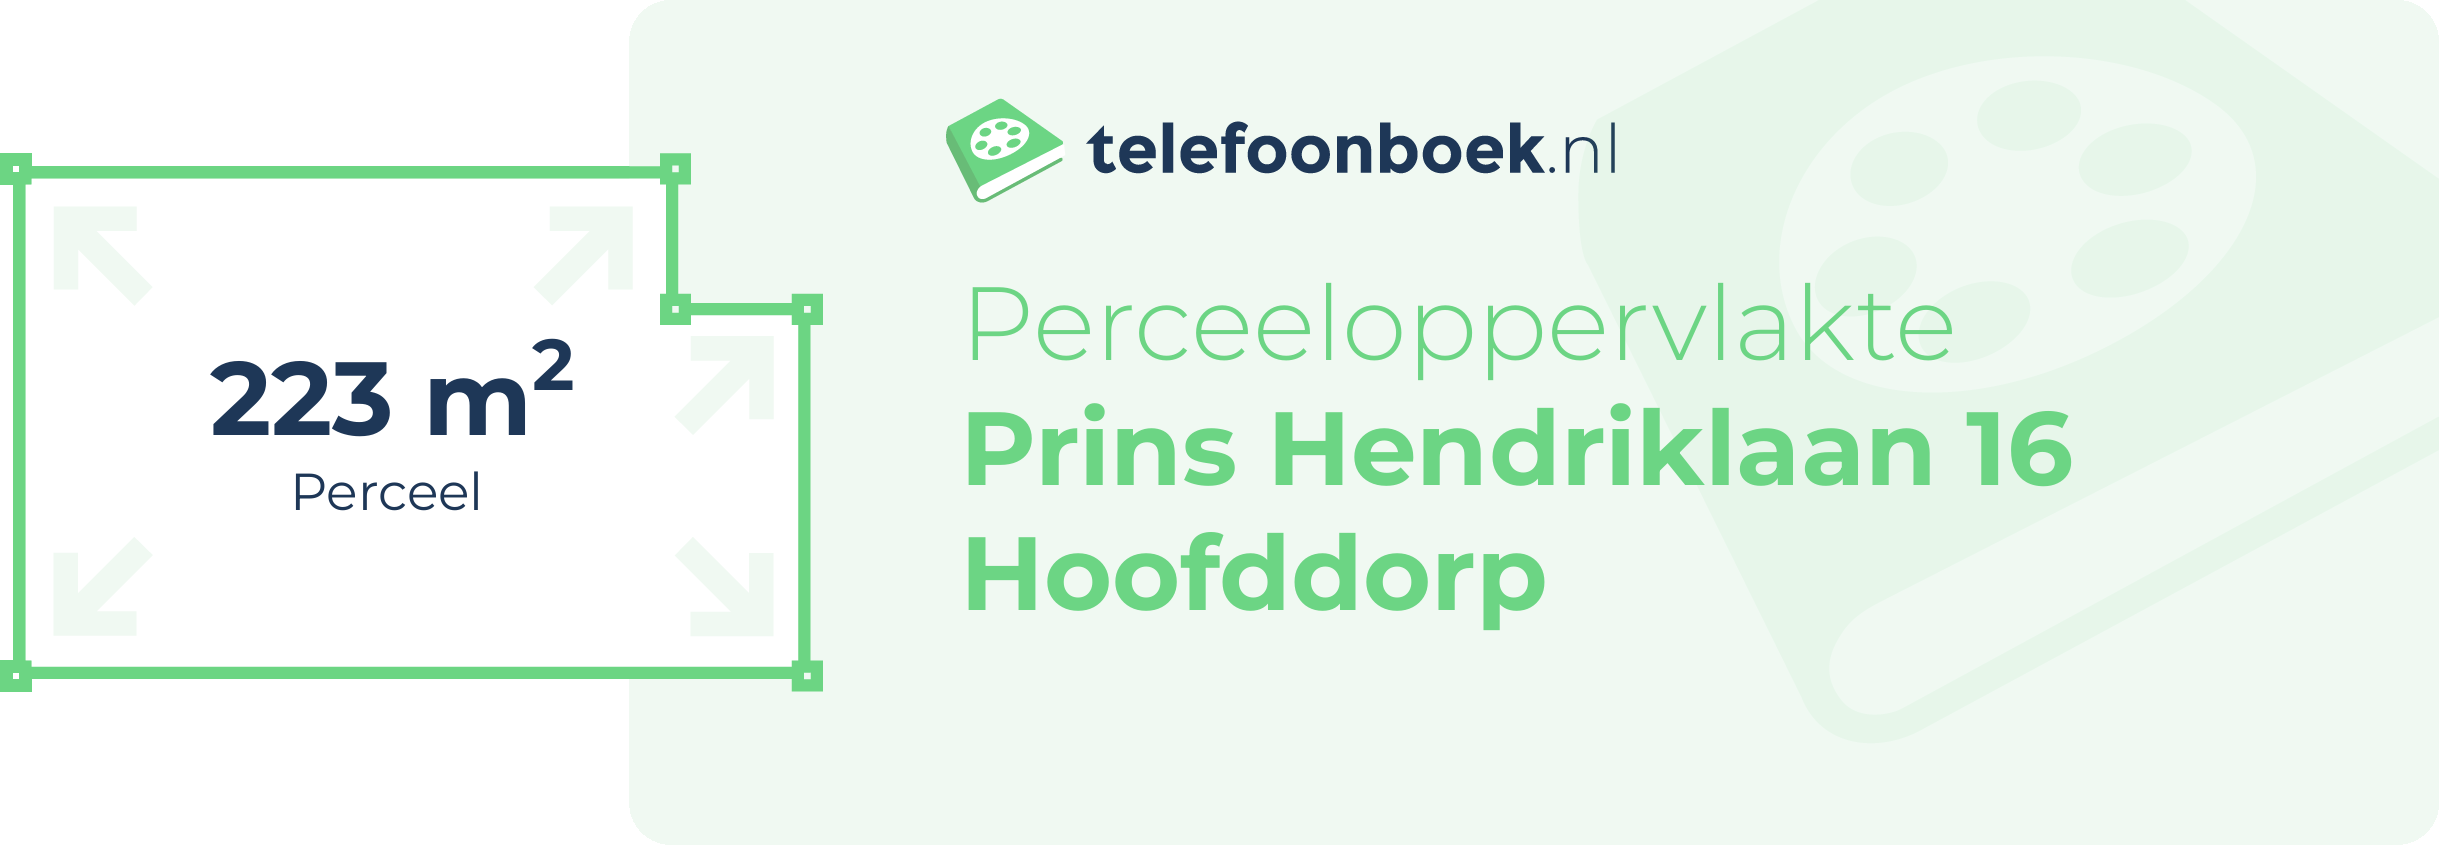 Perceeloppervlakte Prins Hendriklaan 16 Hoofddorp